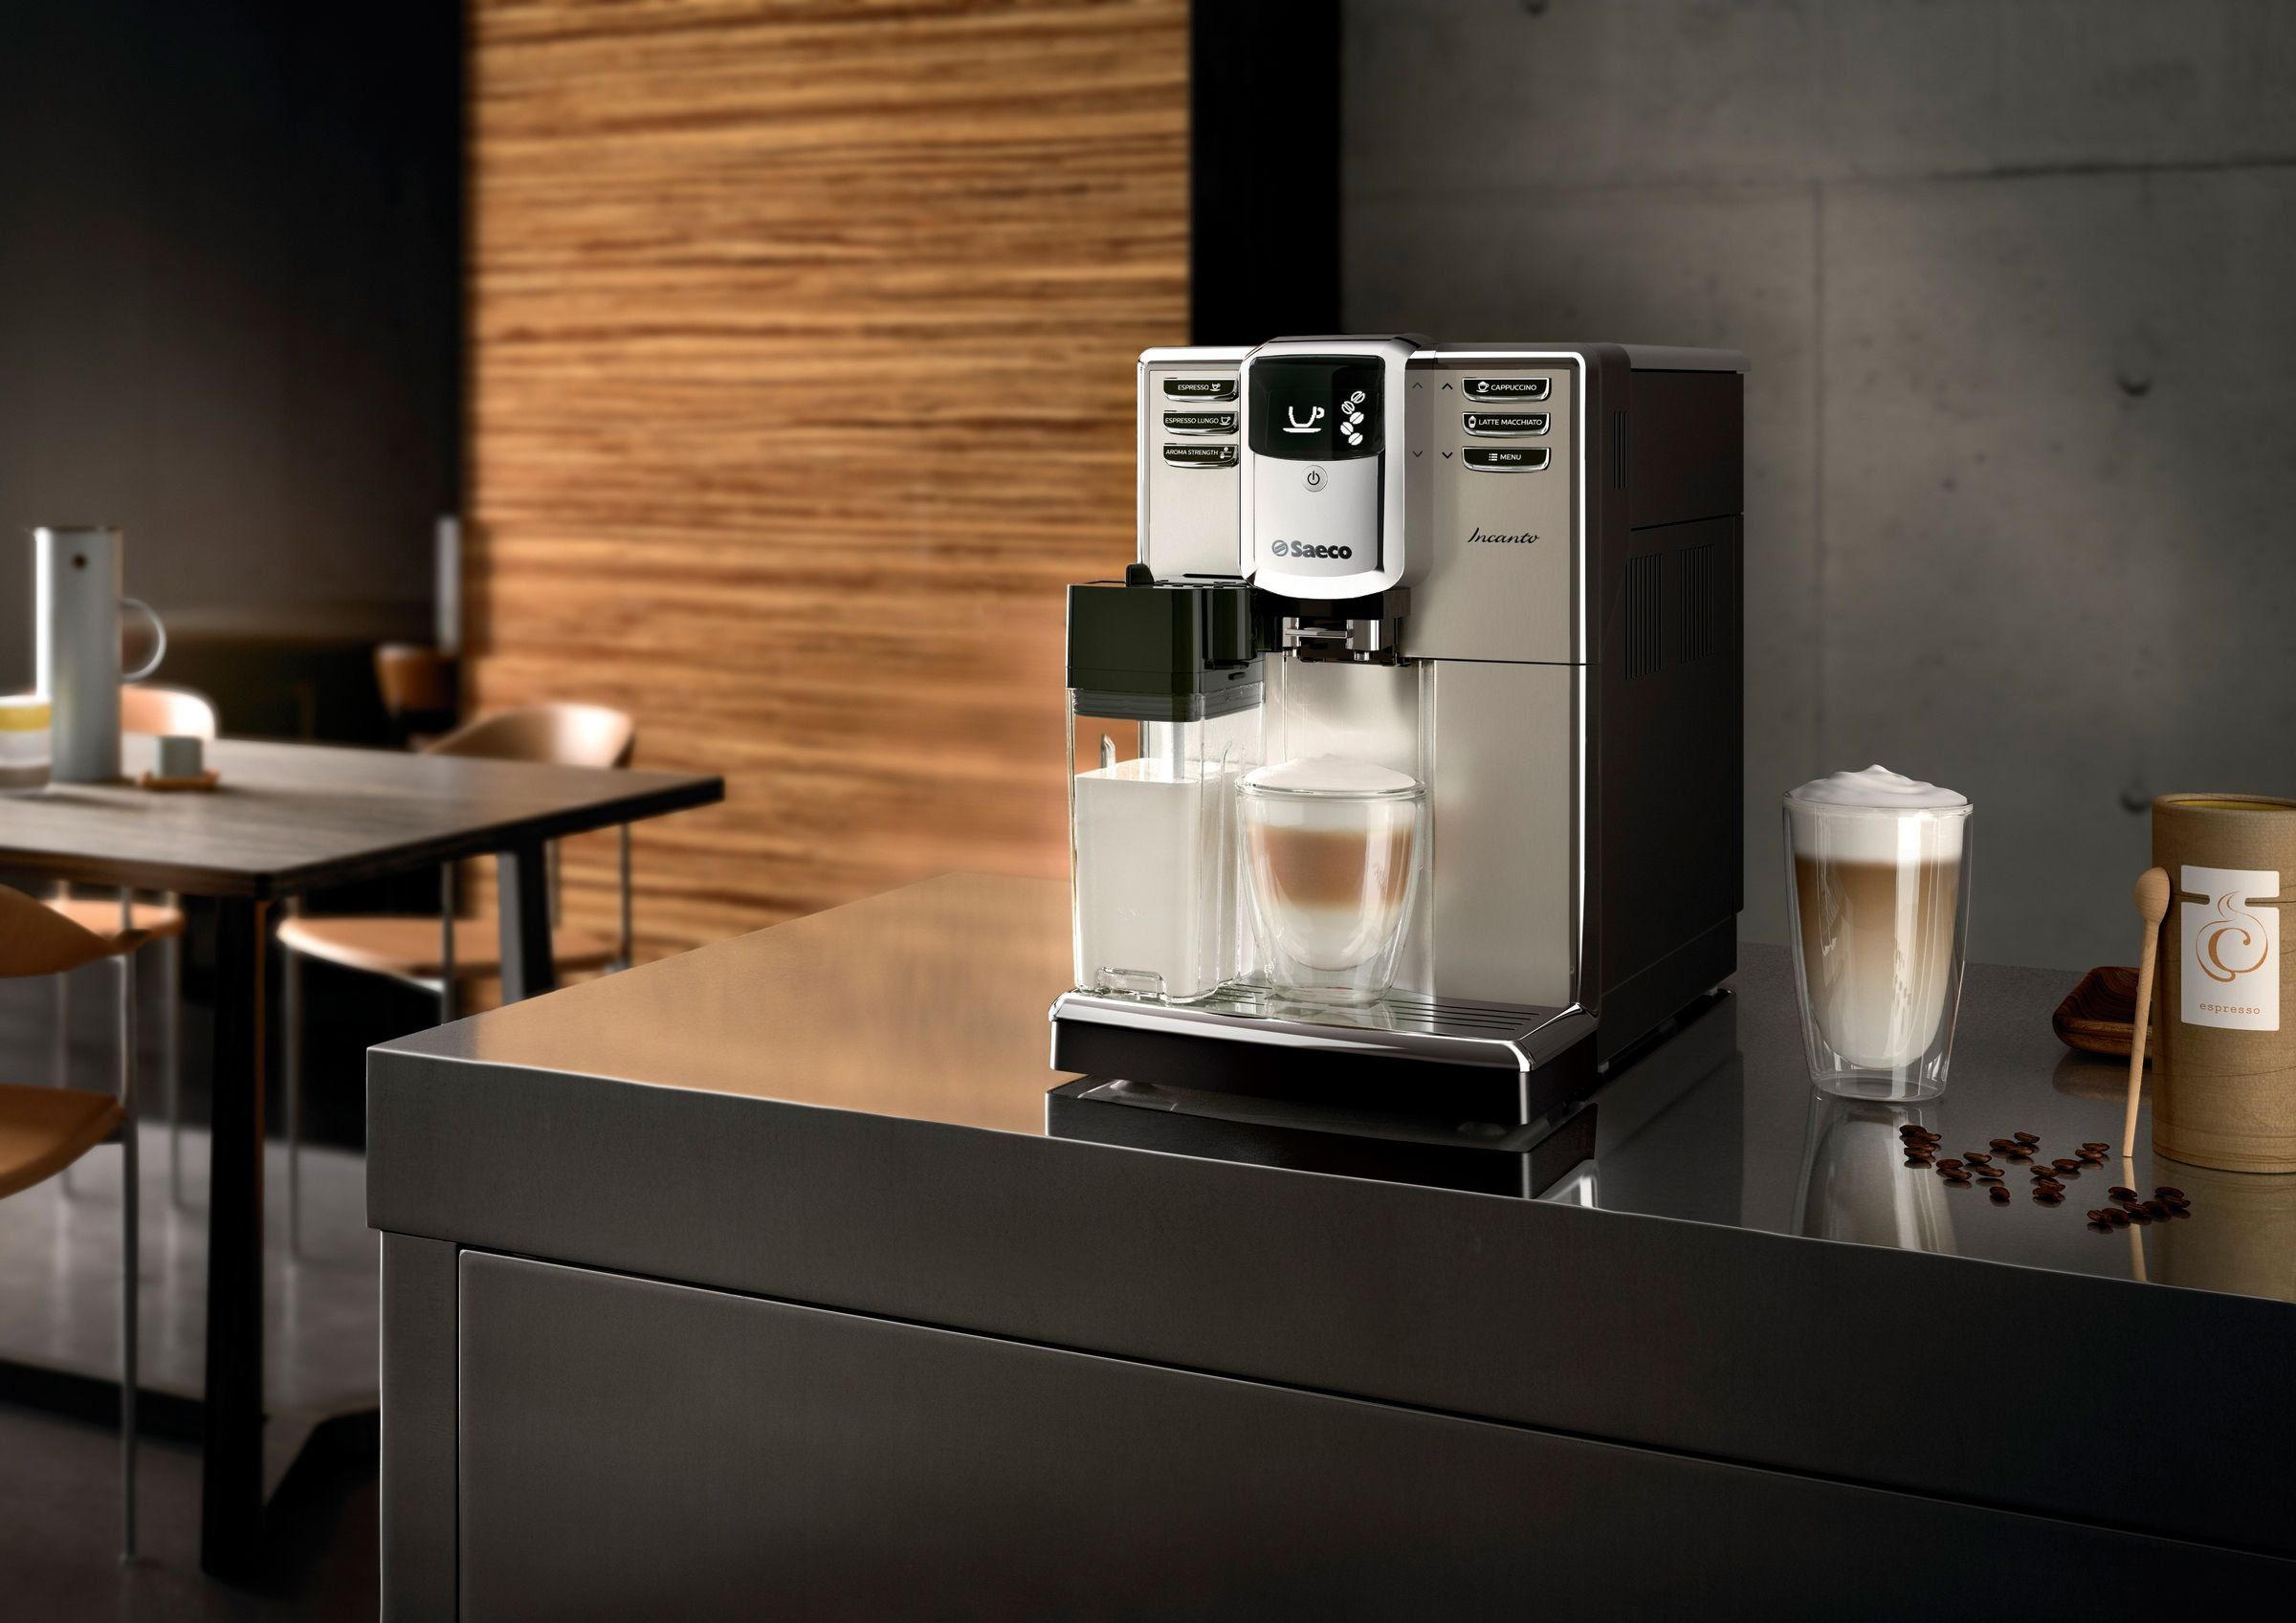 Mesin espresso Saeco terbaik untuk rumah dan pejabat 2020